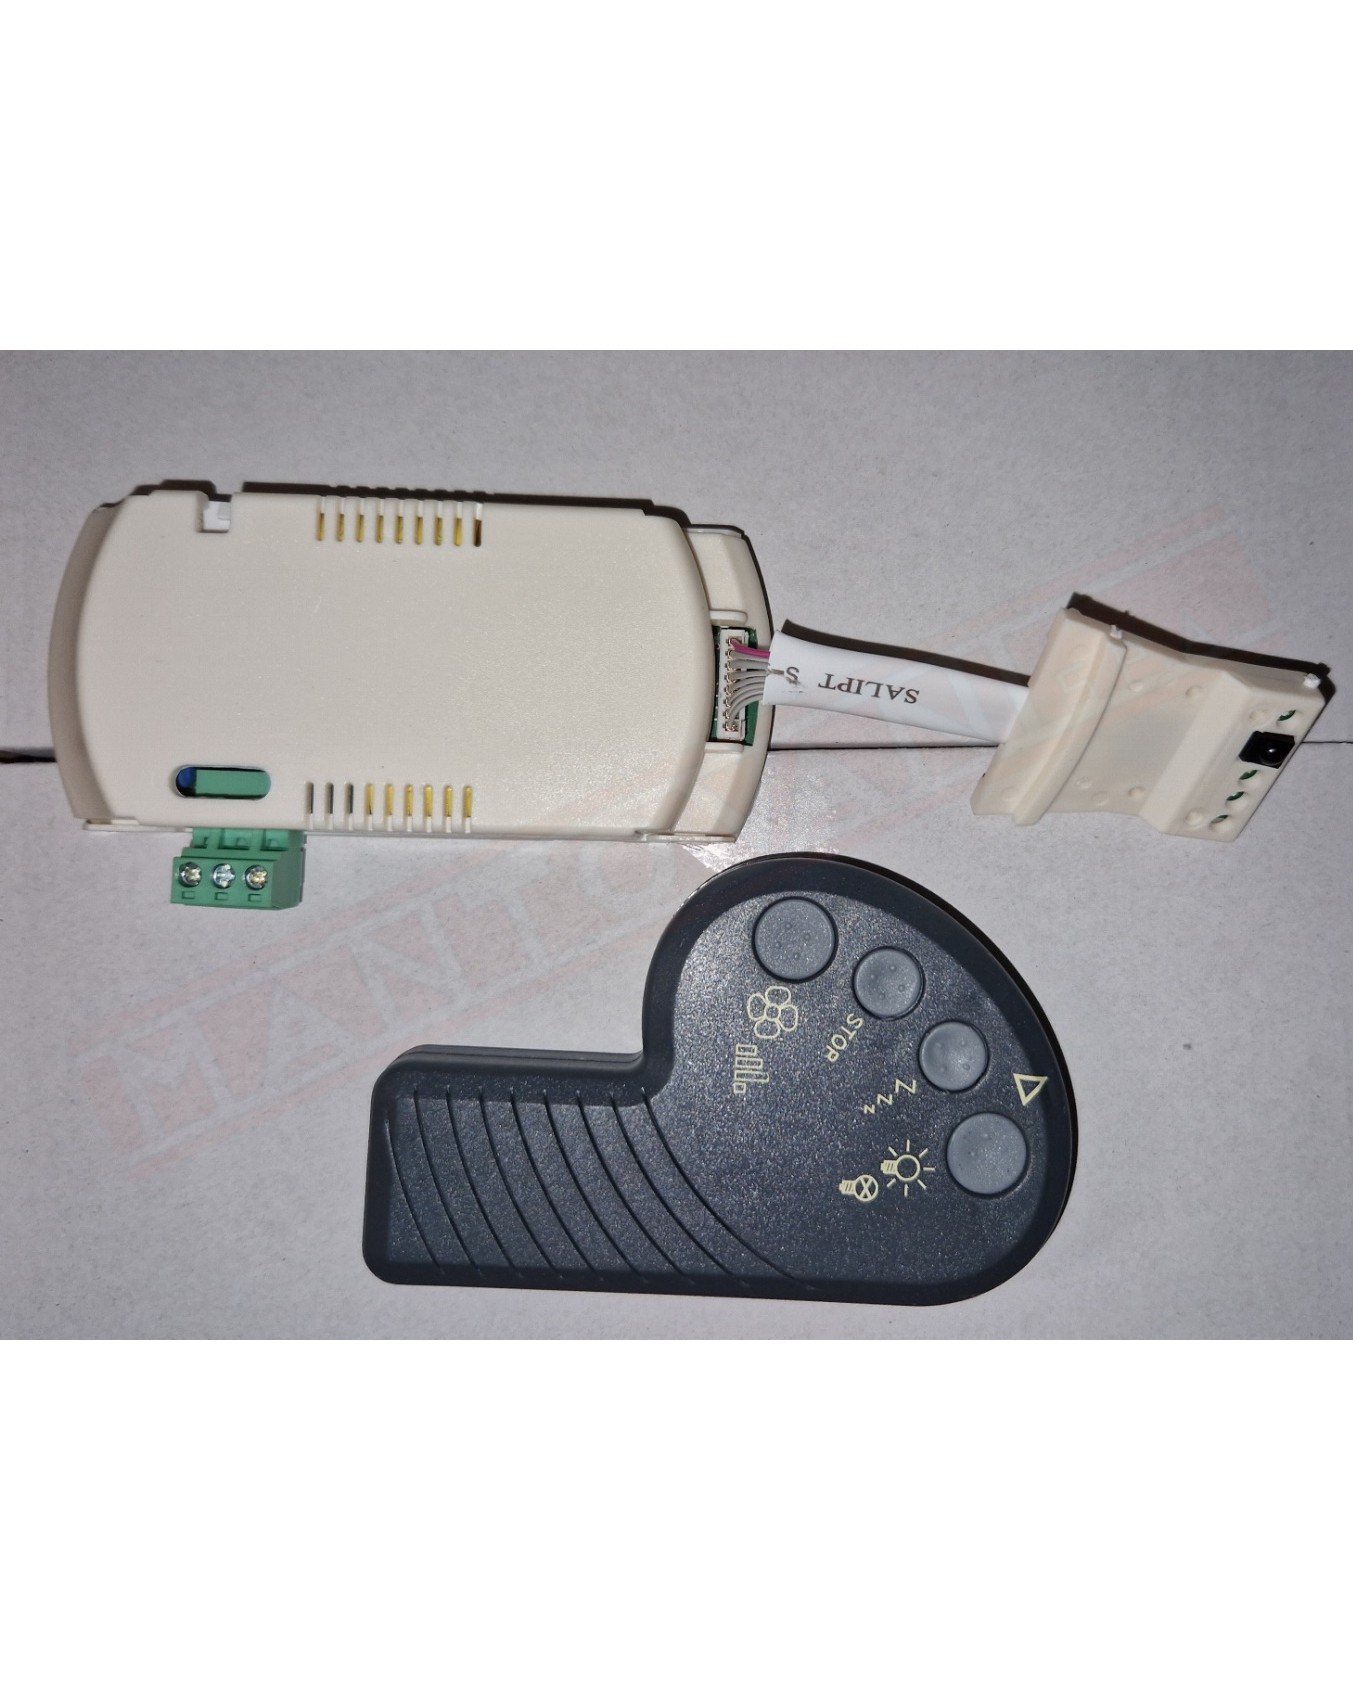 Italexport kit ricevitore telecomando obbligatorio abbinare a ogni ventilatore EX italexport 0019